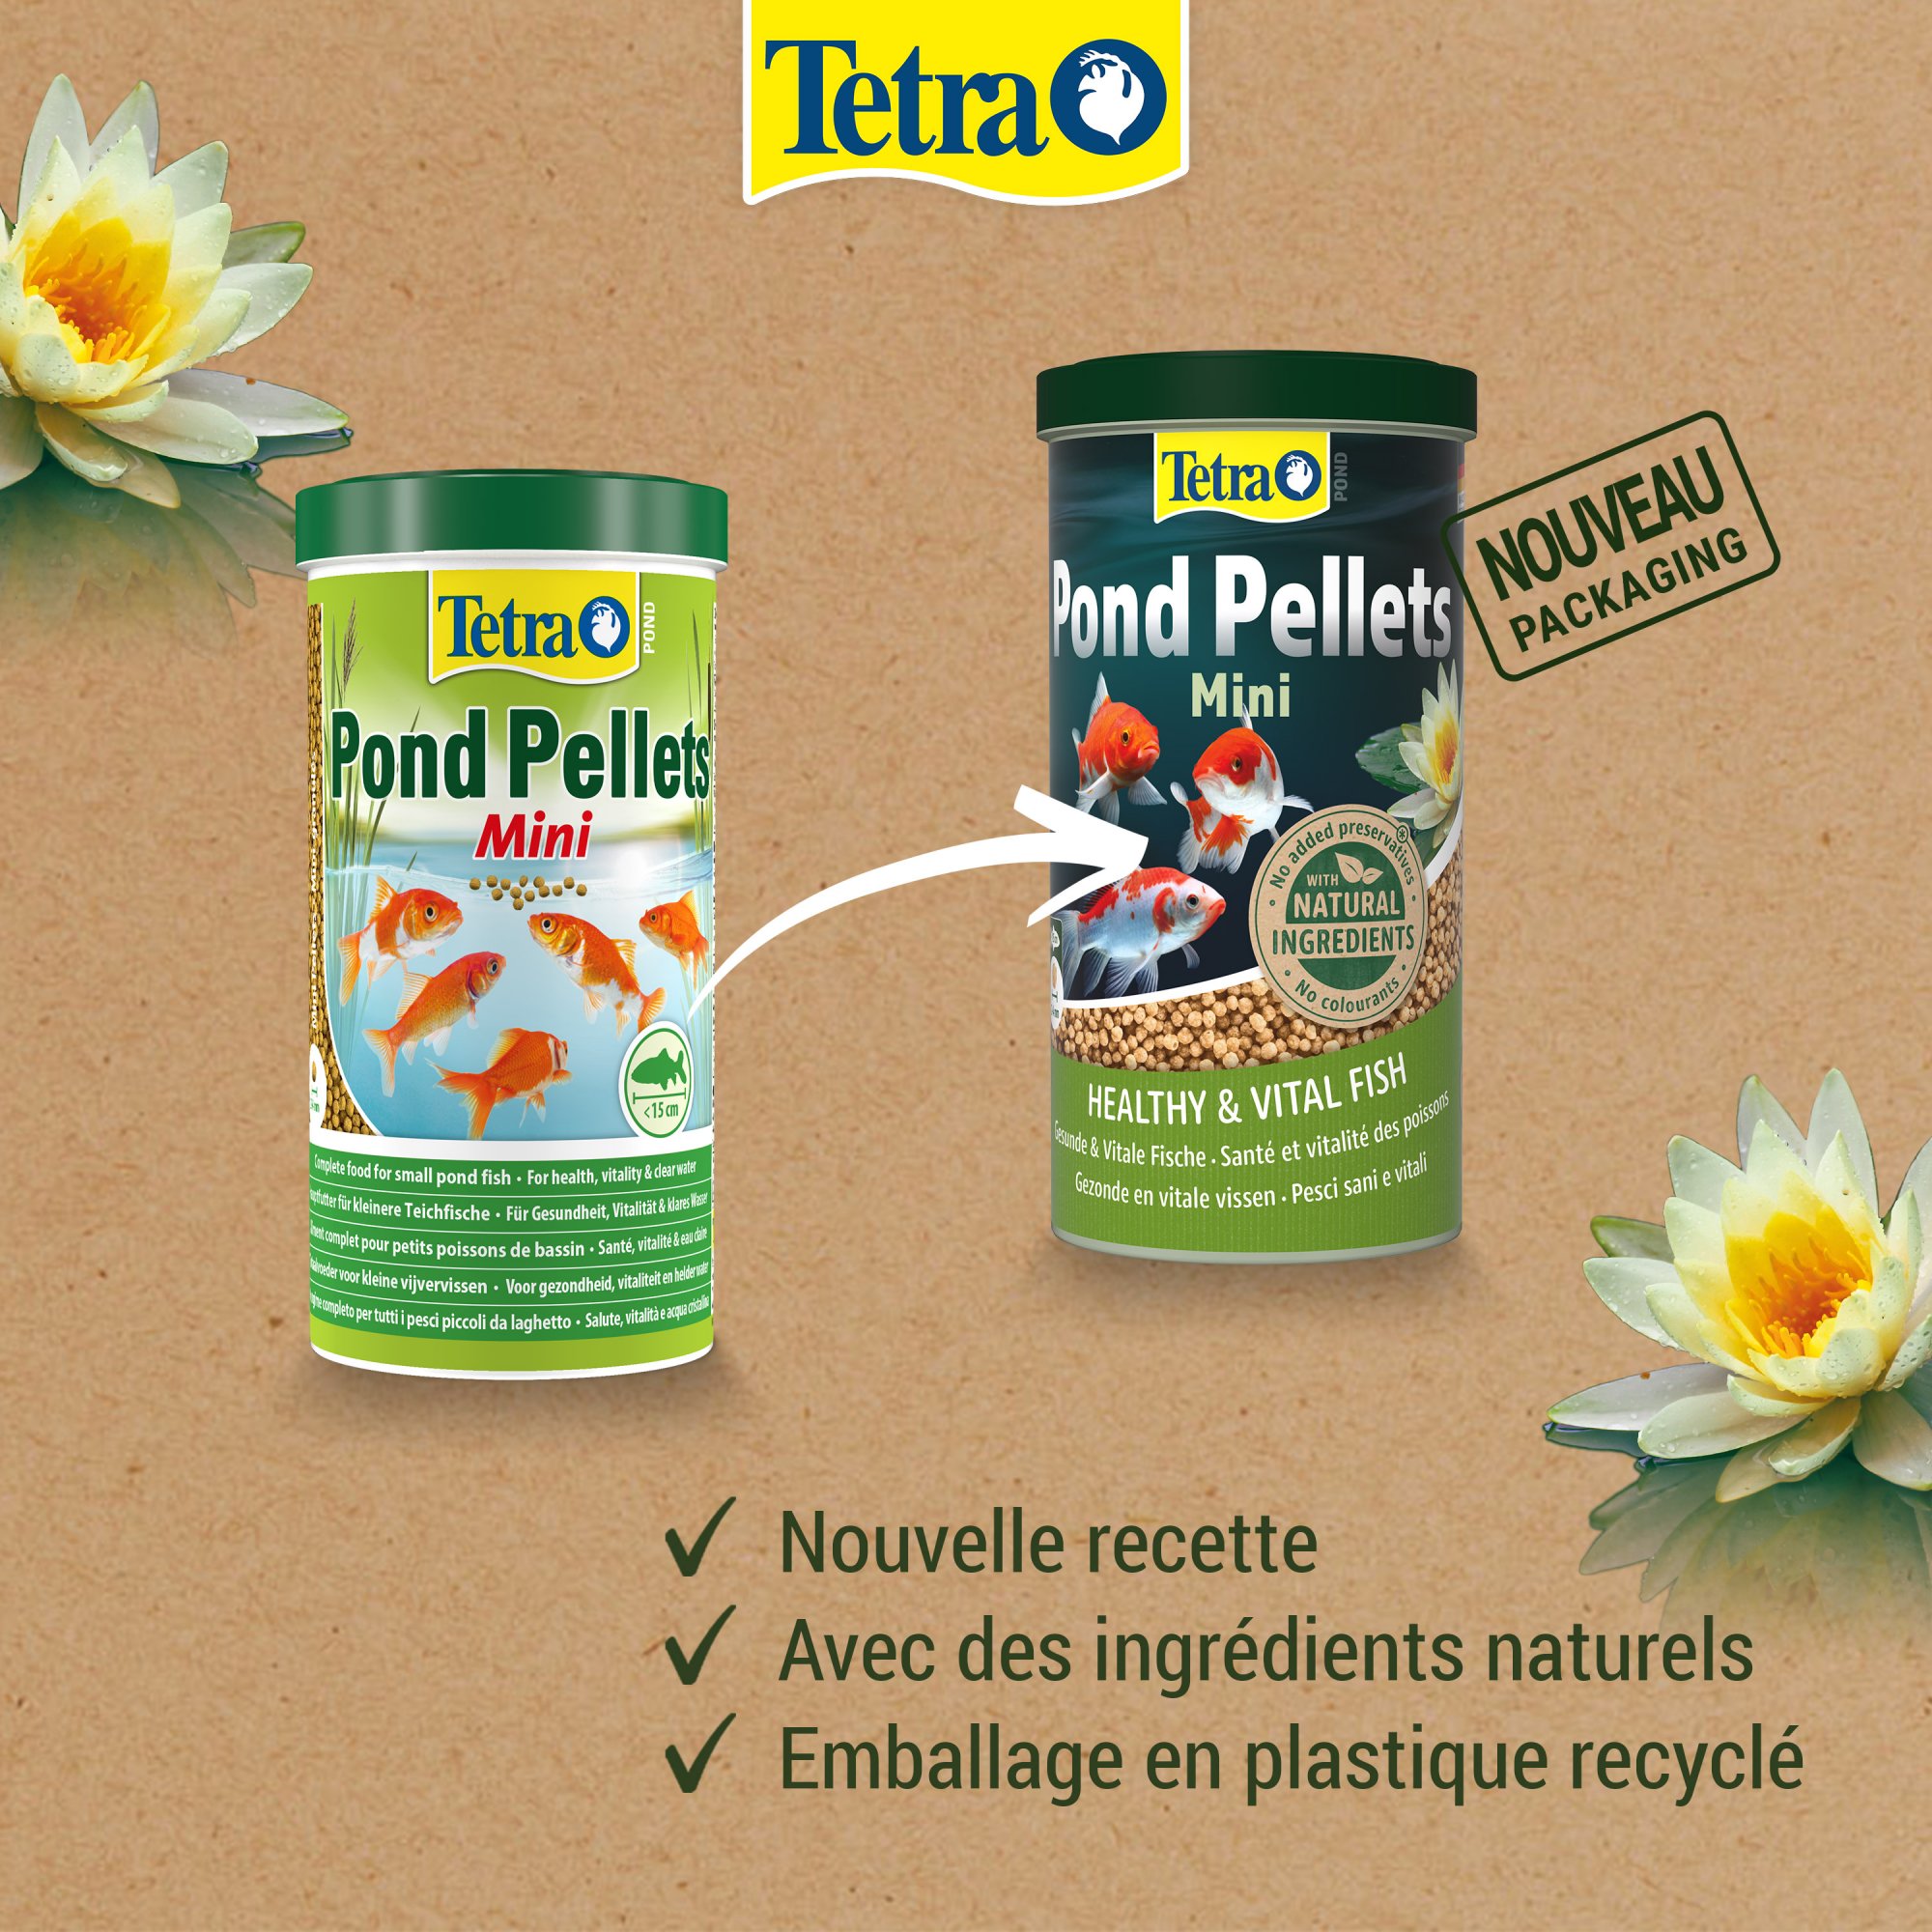 Tetra Pond Pellets Mini Alleinfuttermittel für kleine Teichfische